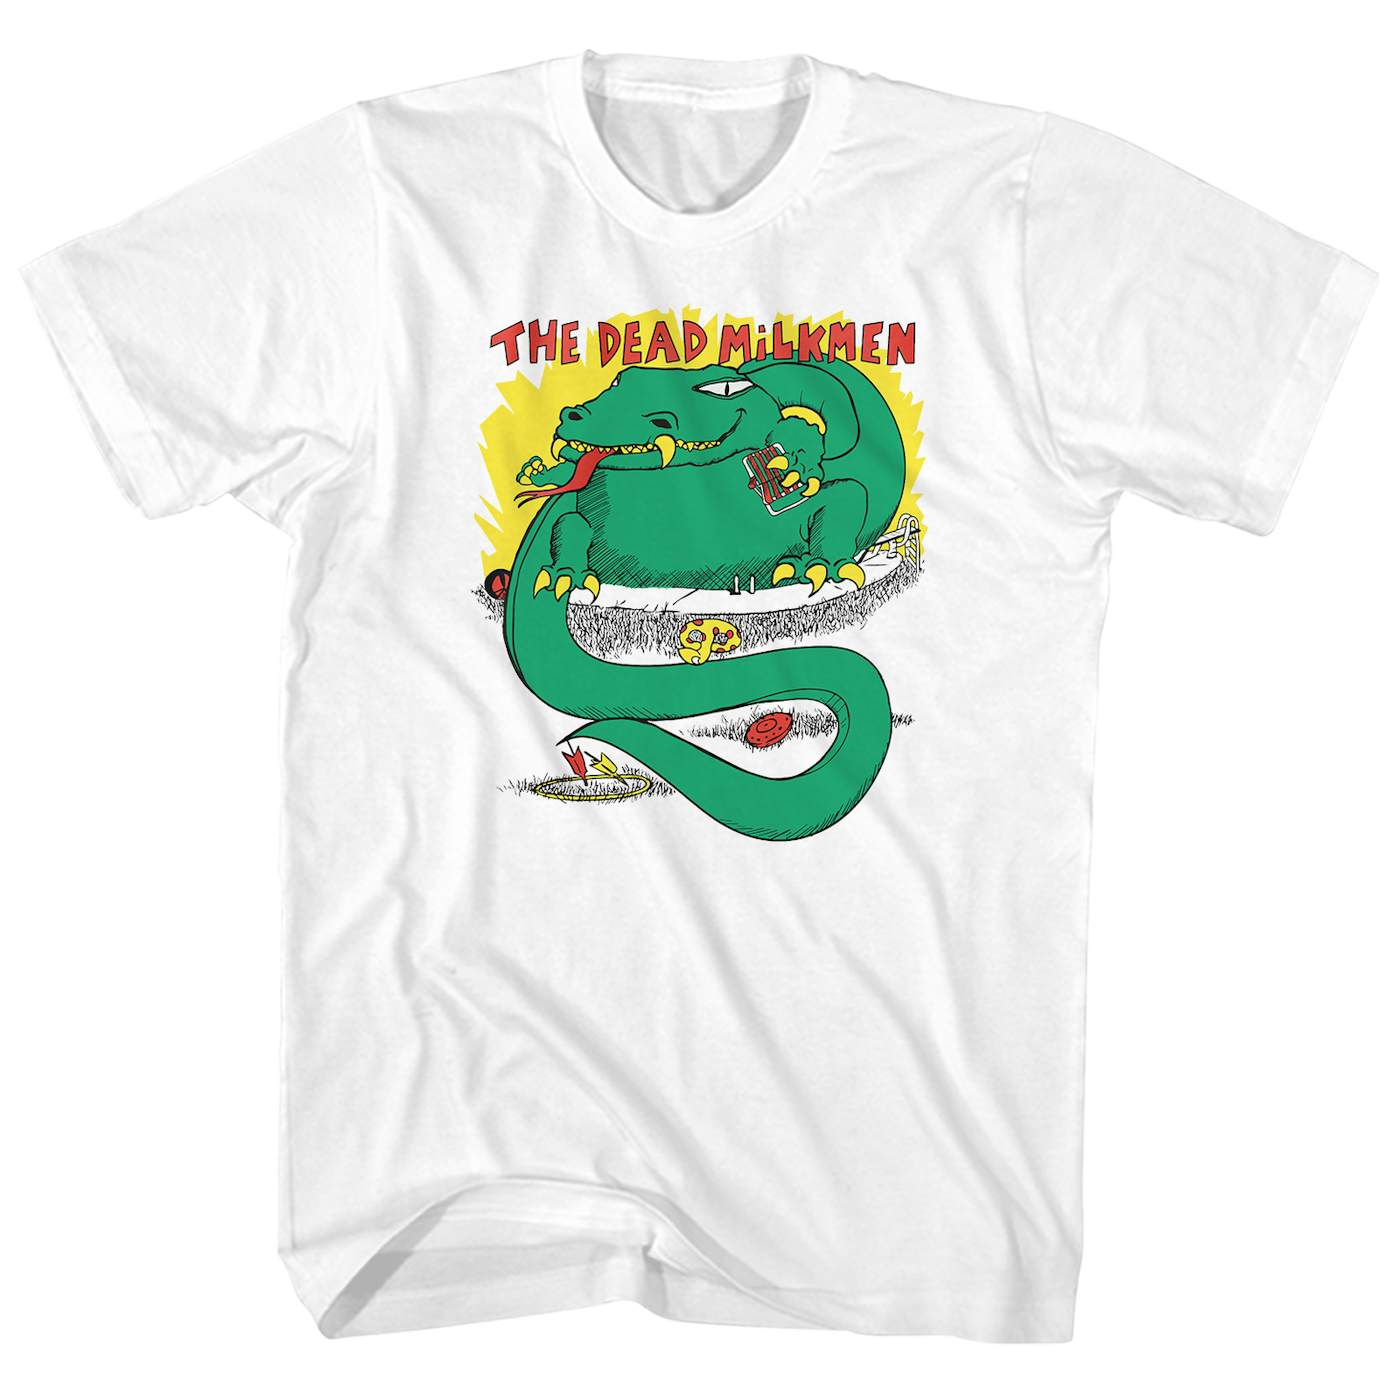 The Dead Milkmen T-Shirt | Big Lizard In My Backyard The Dead Milkmen Shirt